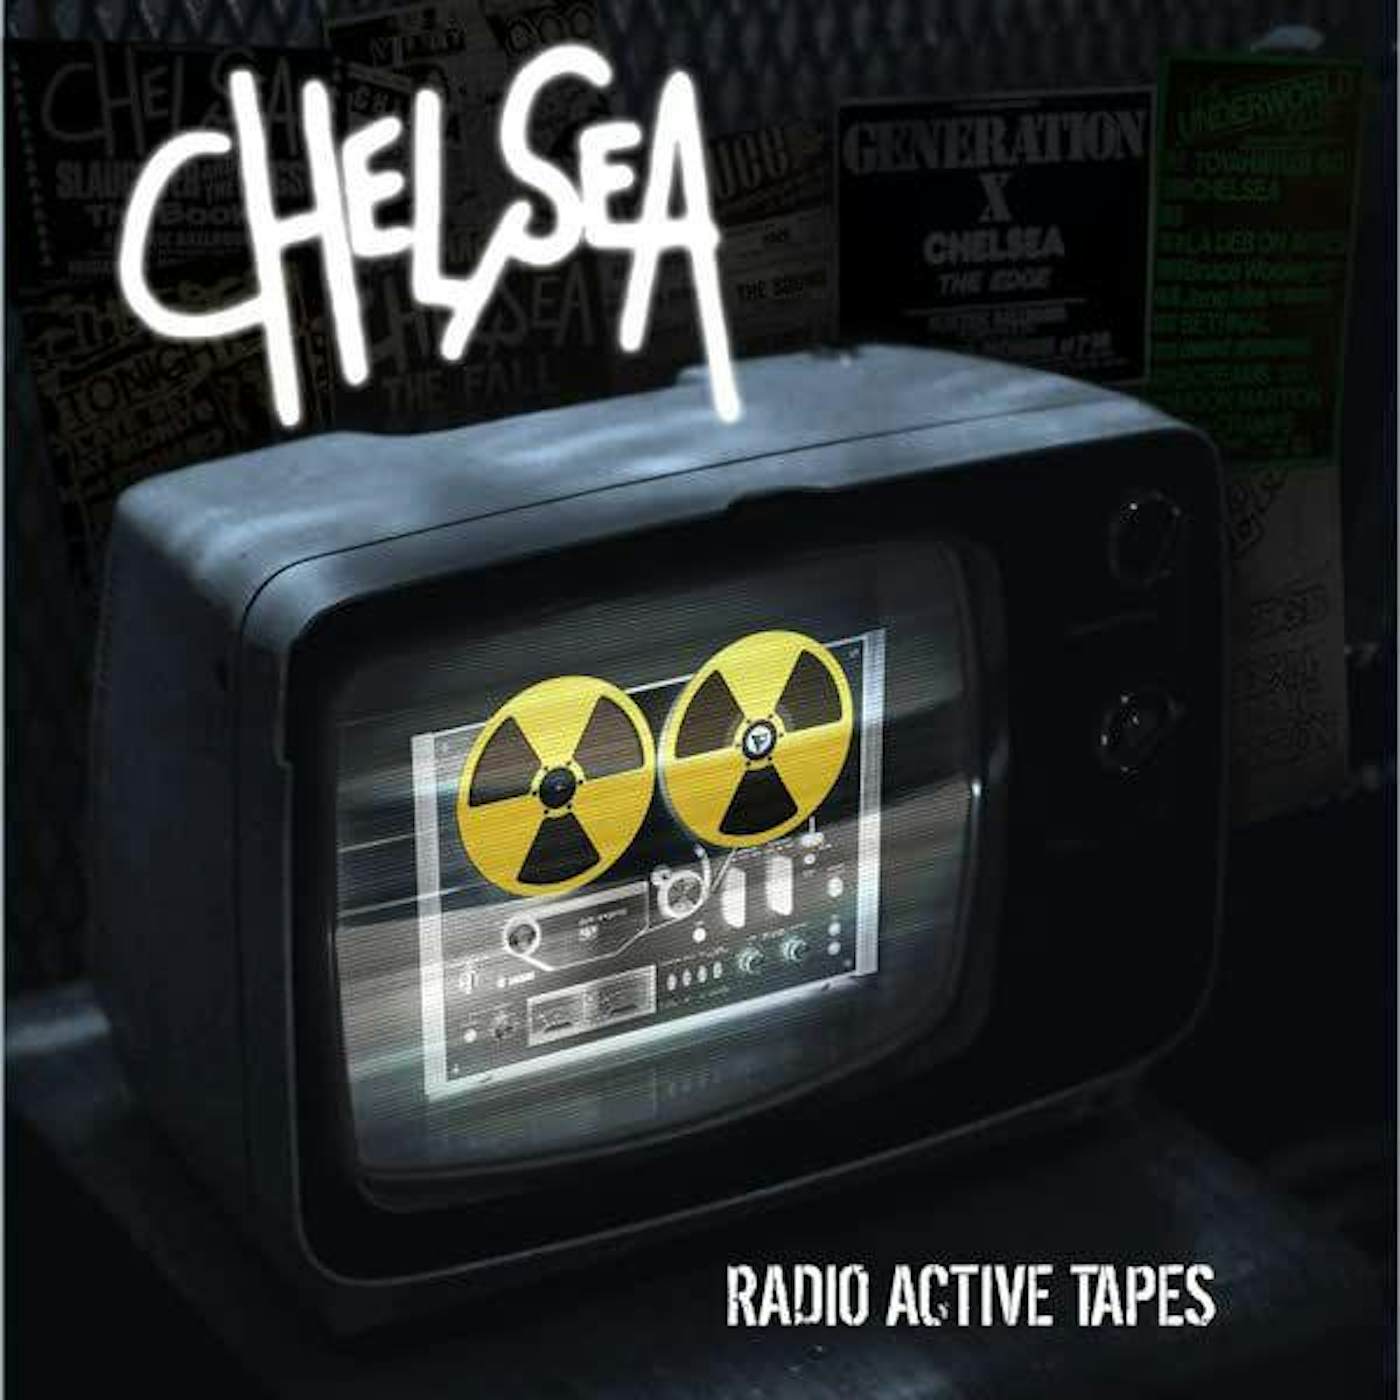 Chelsea Radio Active Tapes Vinyl Record